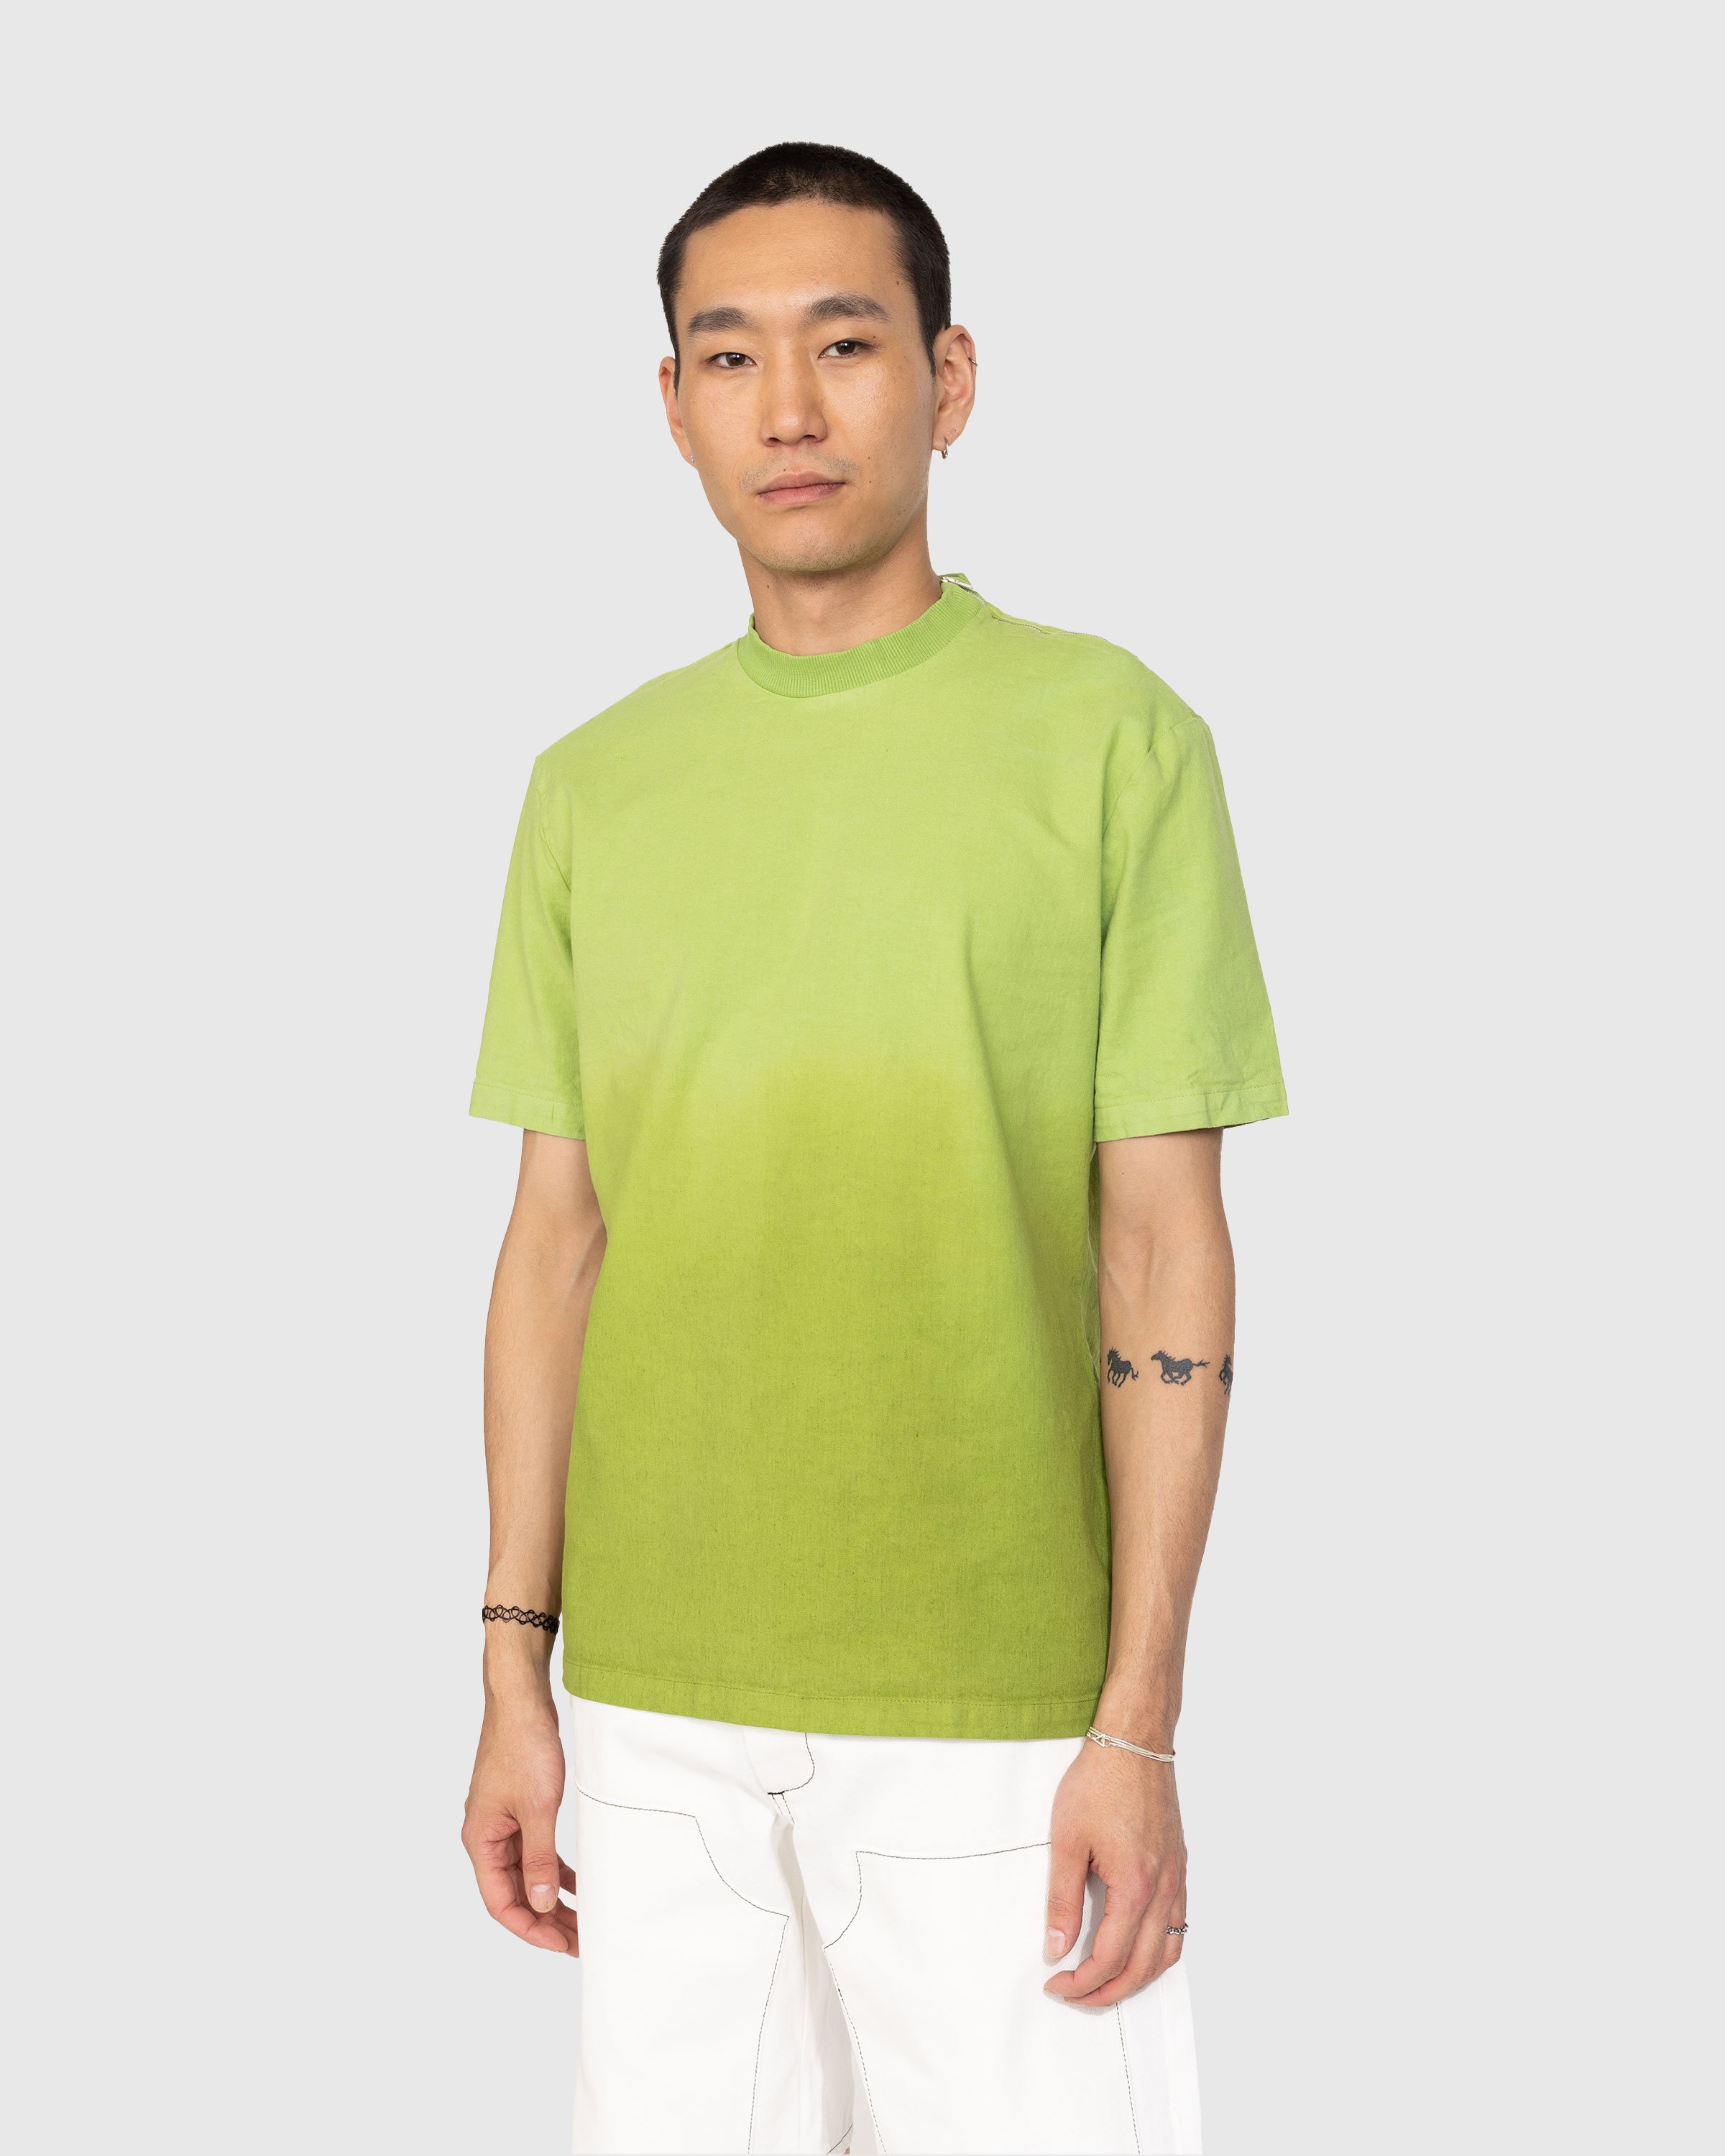 Winnie New York – Degrade Linen T-Shirt Green | Highsnobiety Shop